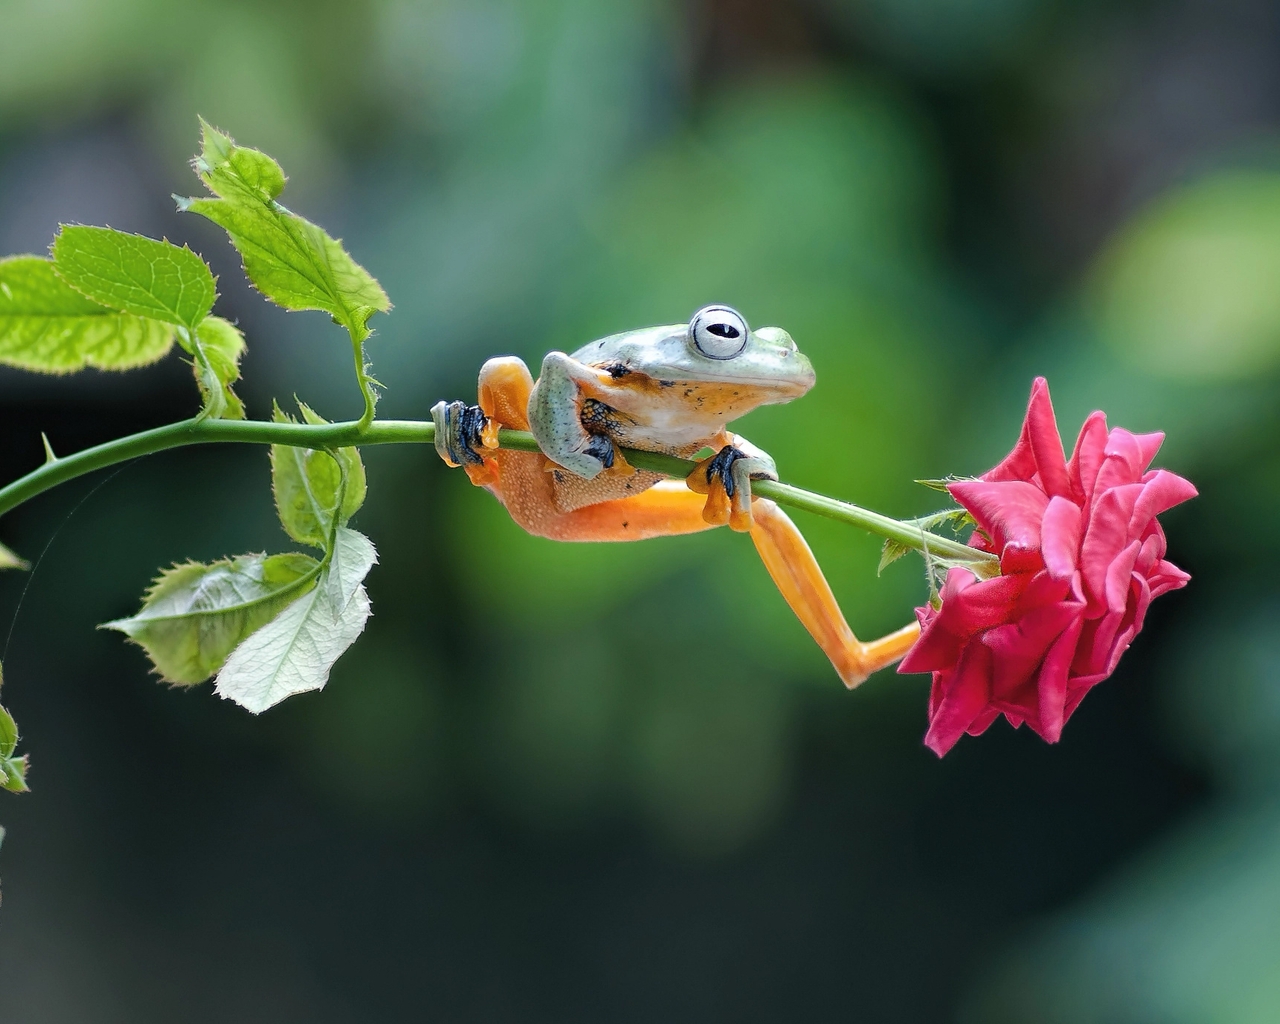 Картинка: Лягушка, сидит, стебель, цветок, роза